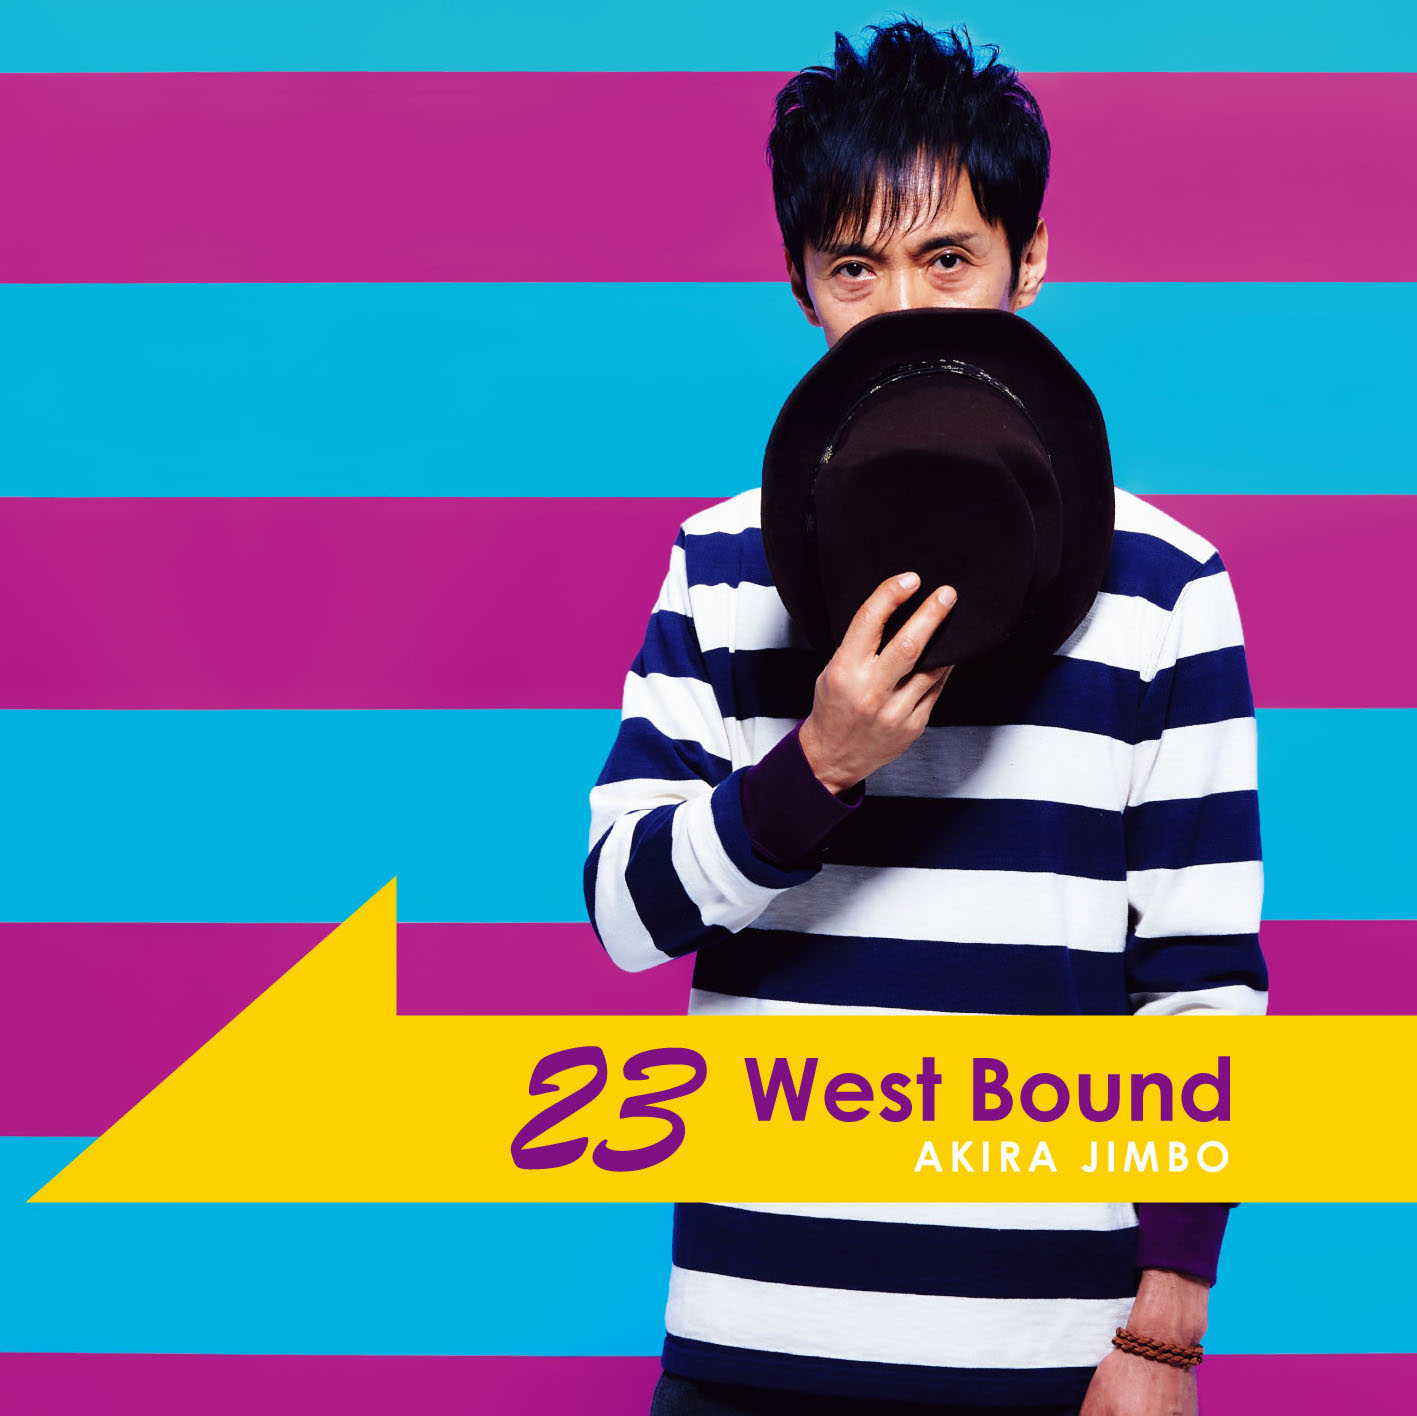 23 West Bound/Akira Jimbo